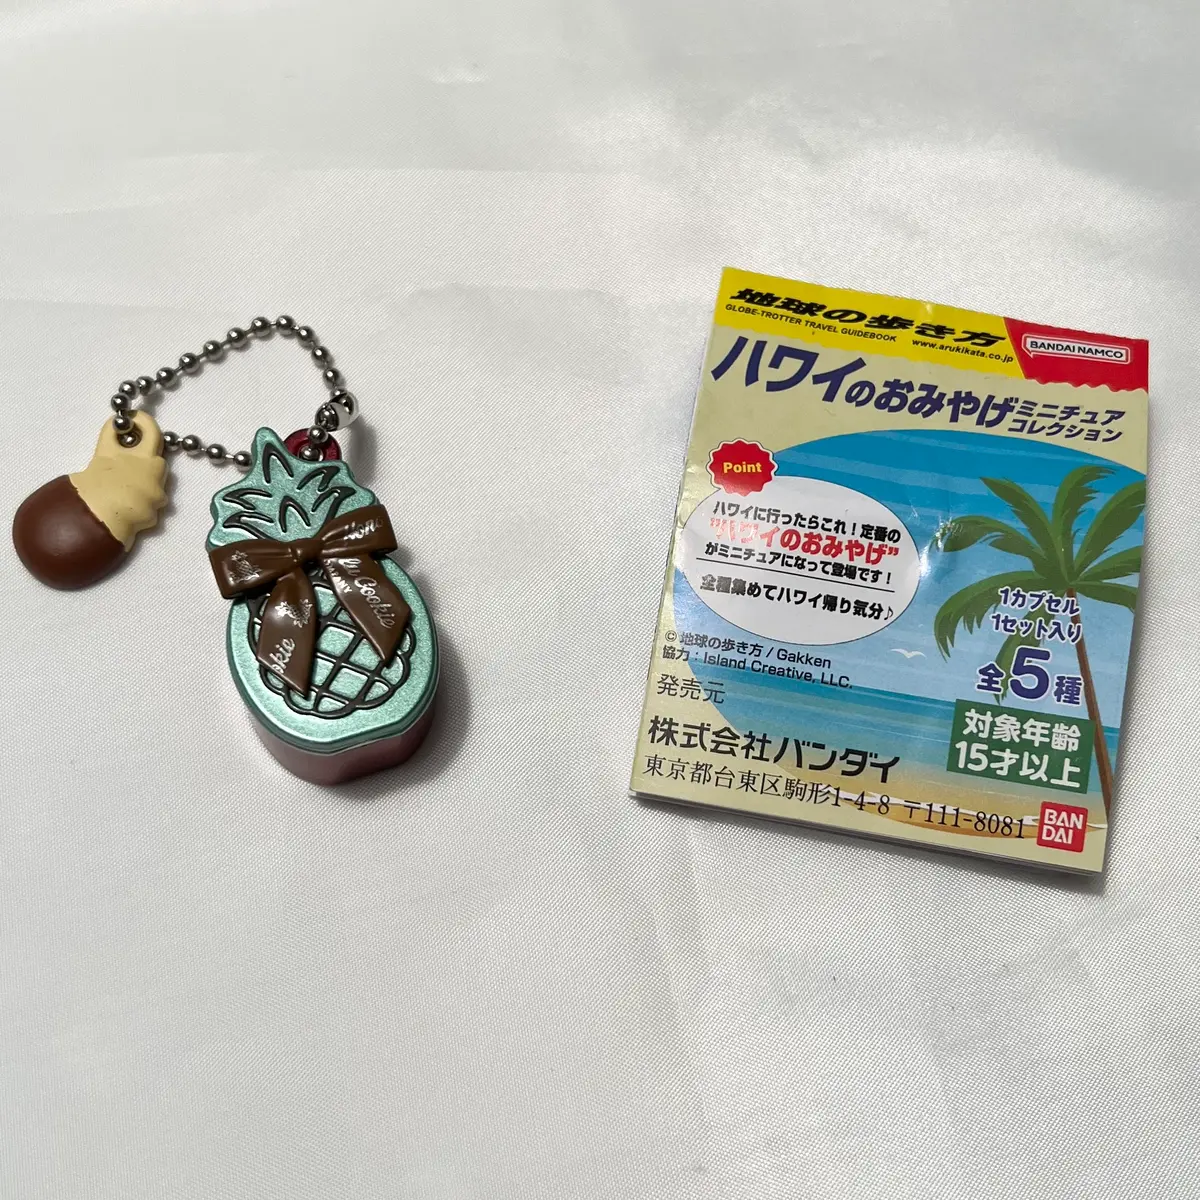 ハワイのおみやげミニチュアコレクション ガシャポン 【限定価格セール